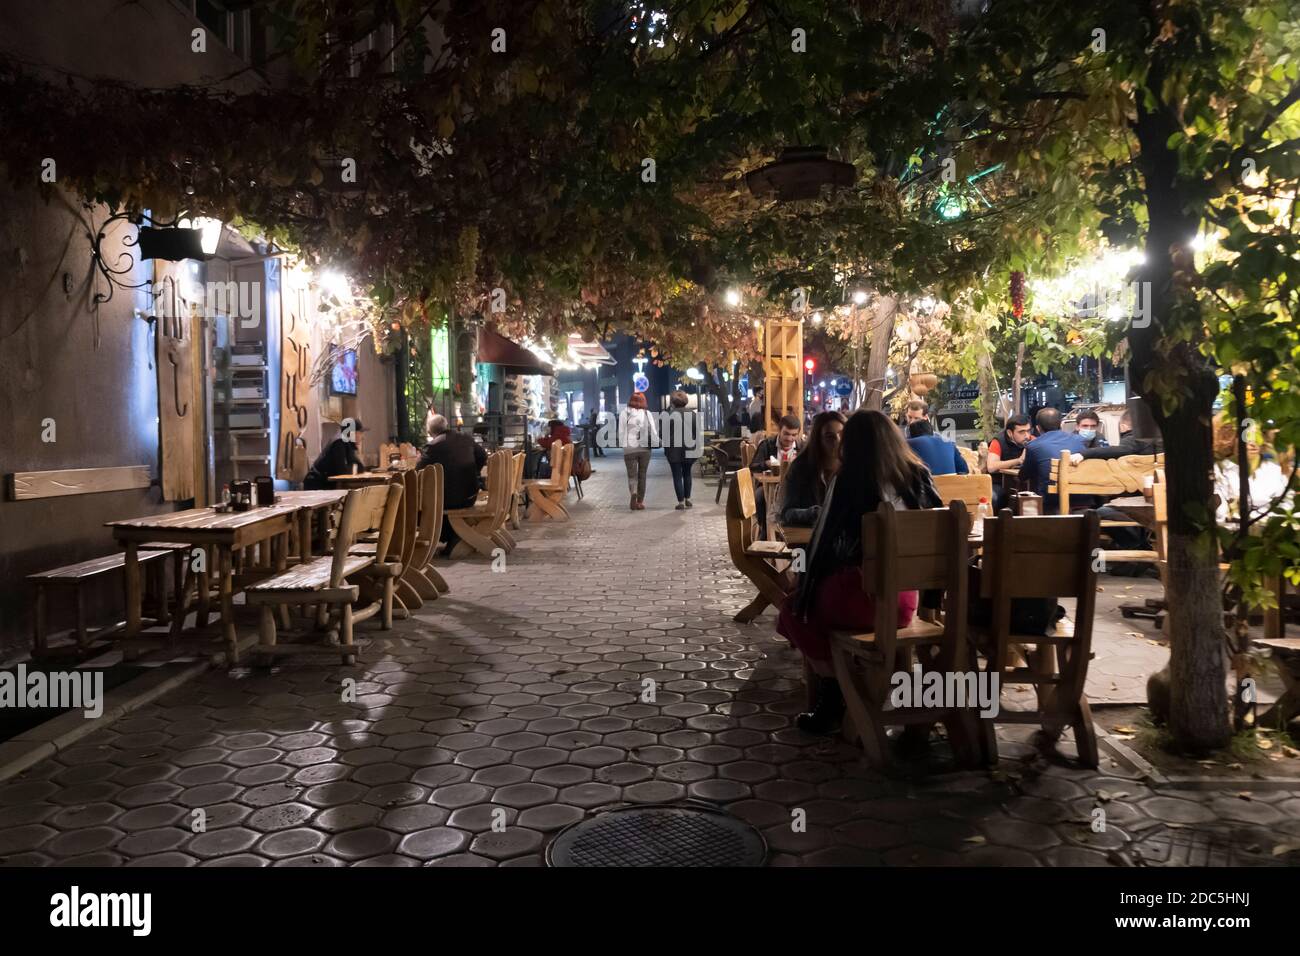 Les clients dînent à l'extérieur dans un restaurant de la capitale d'Erevan Arménie Banque D'Images